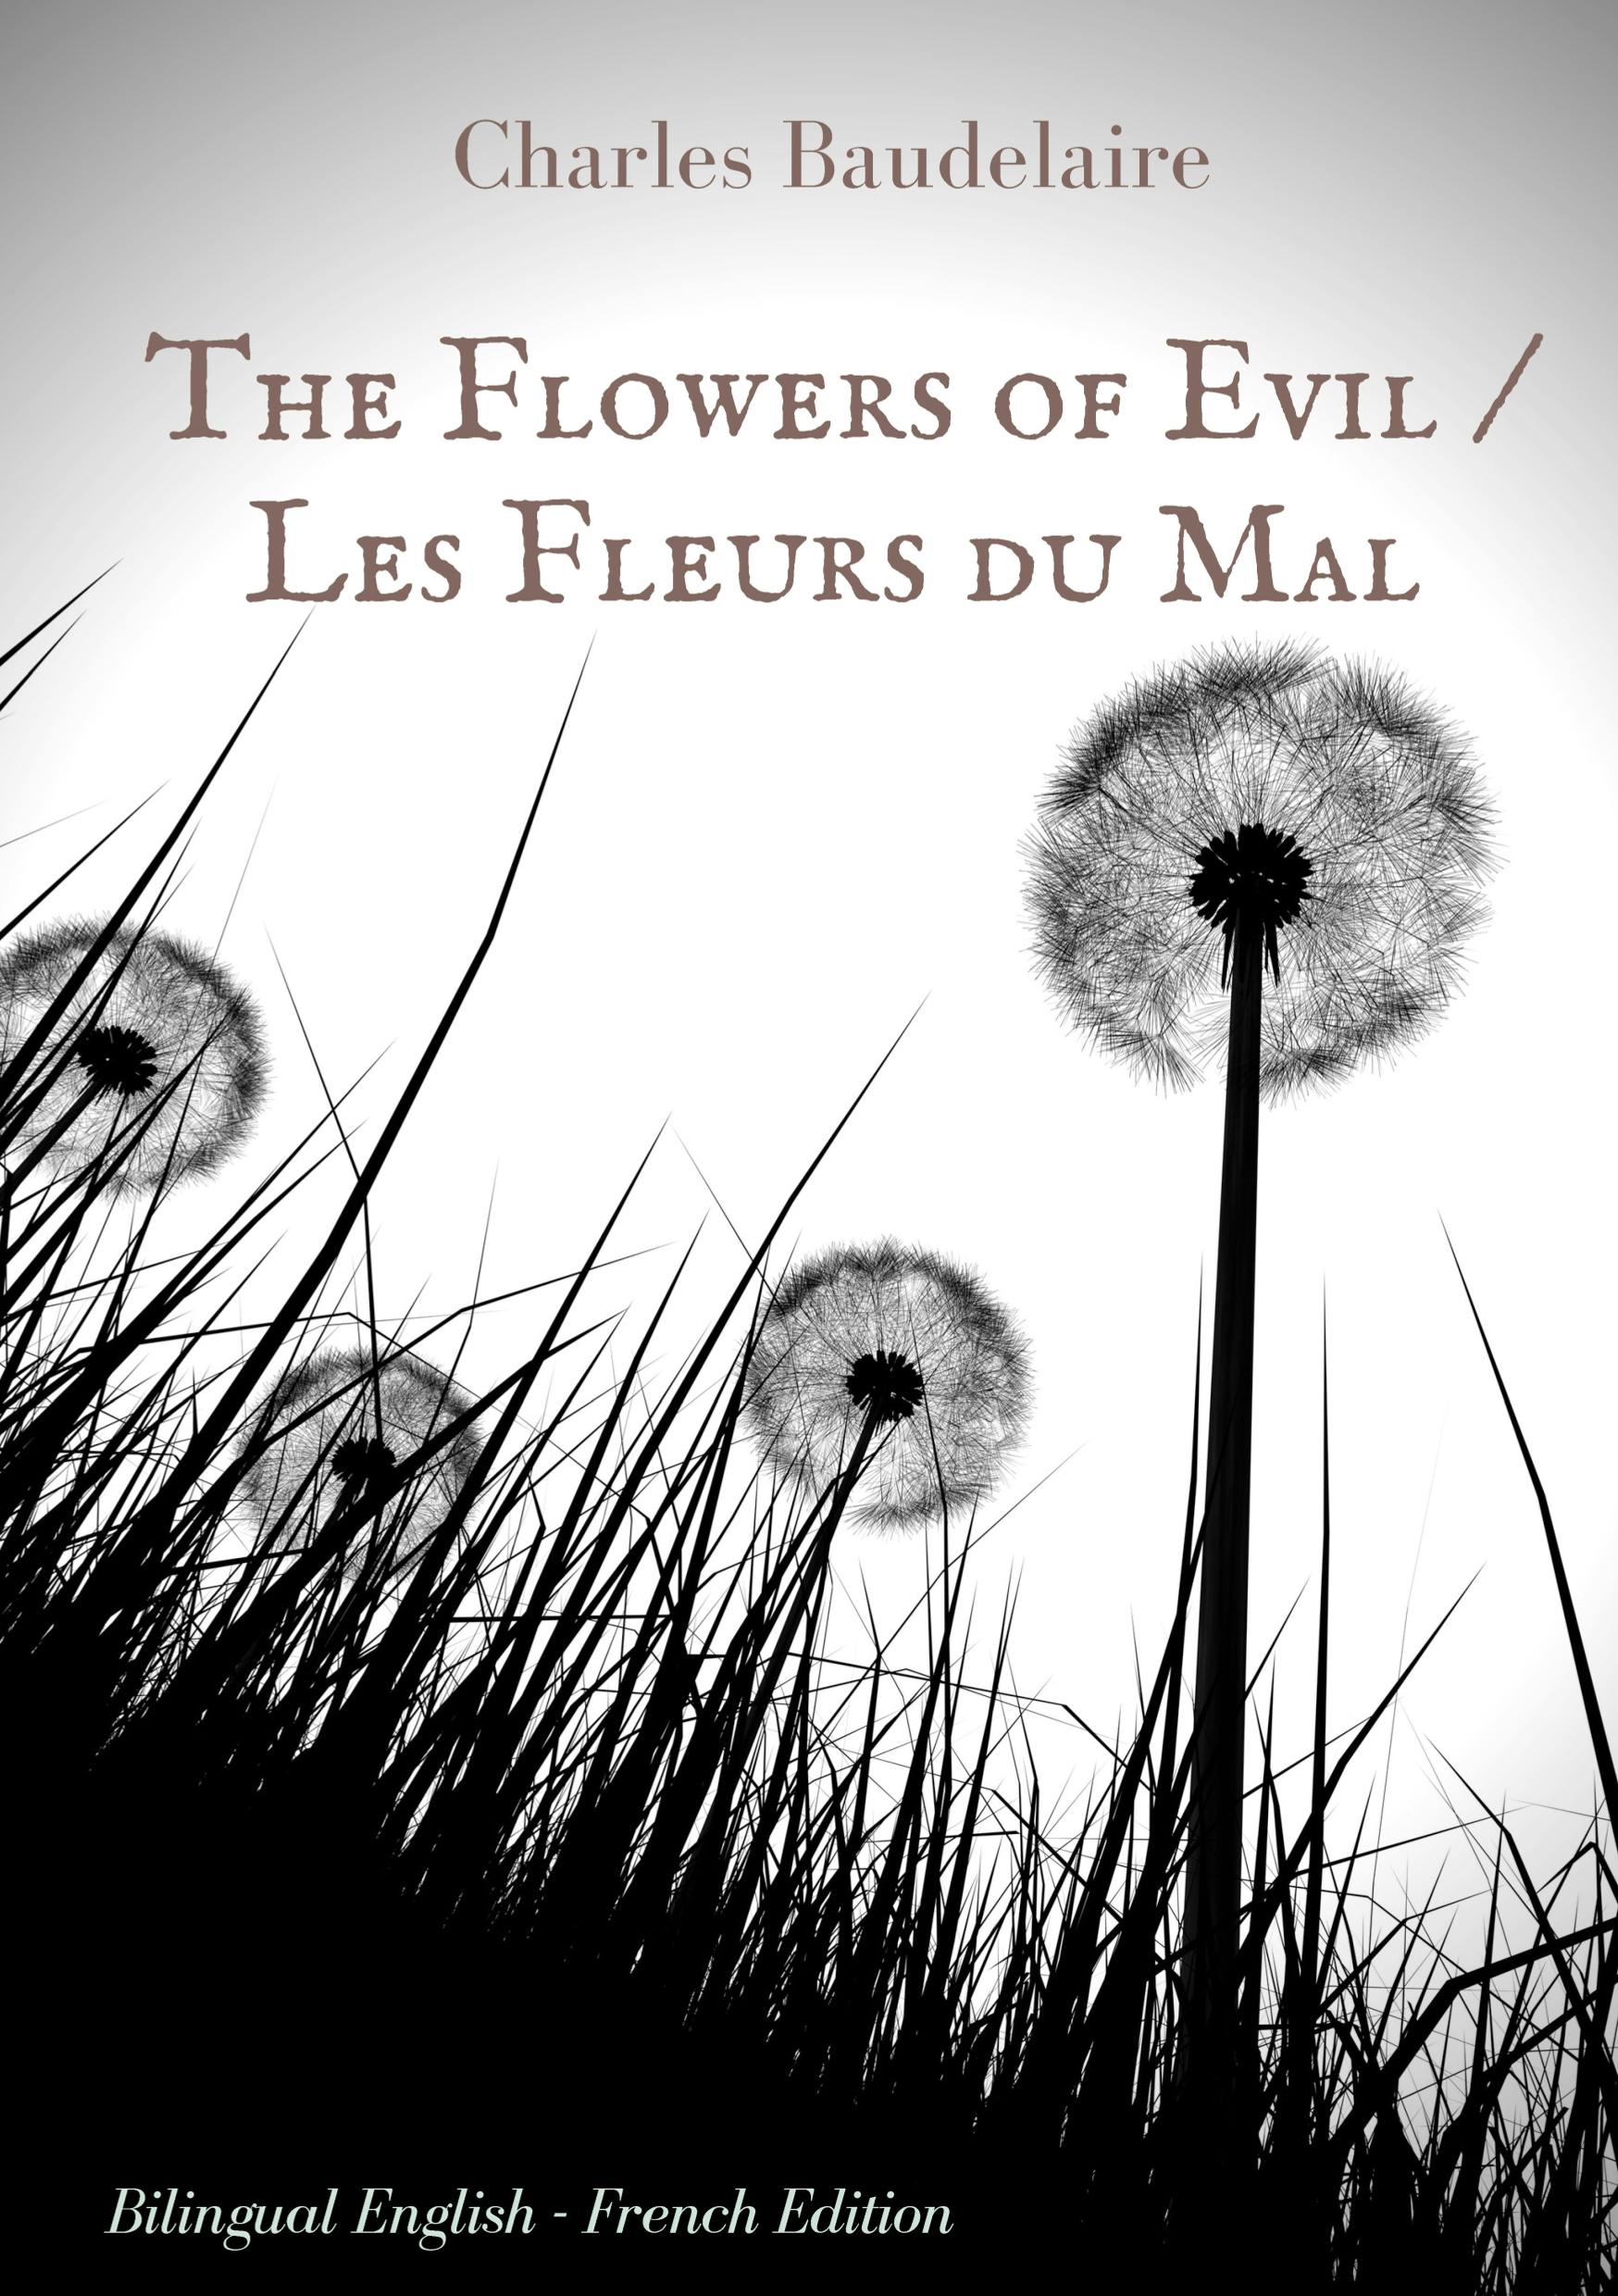 Le Fleur du Mal